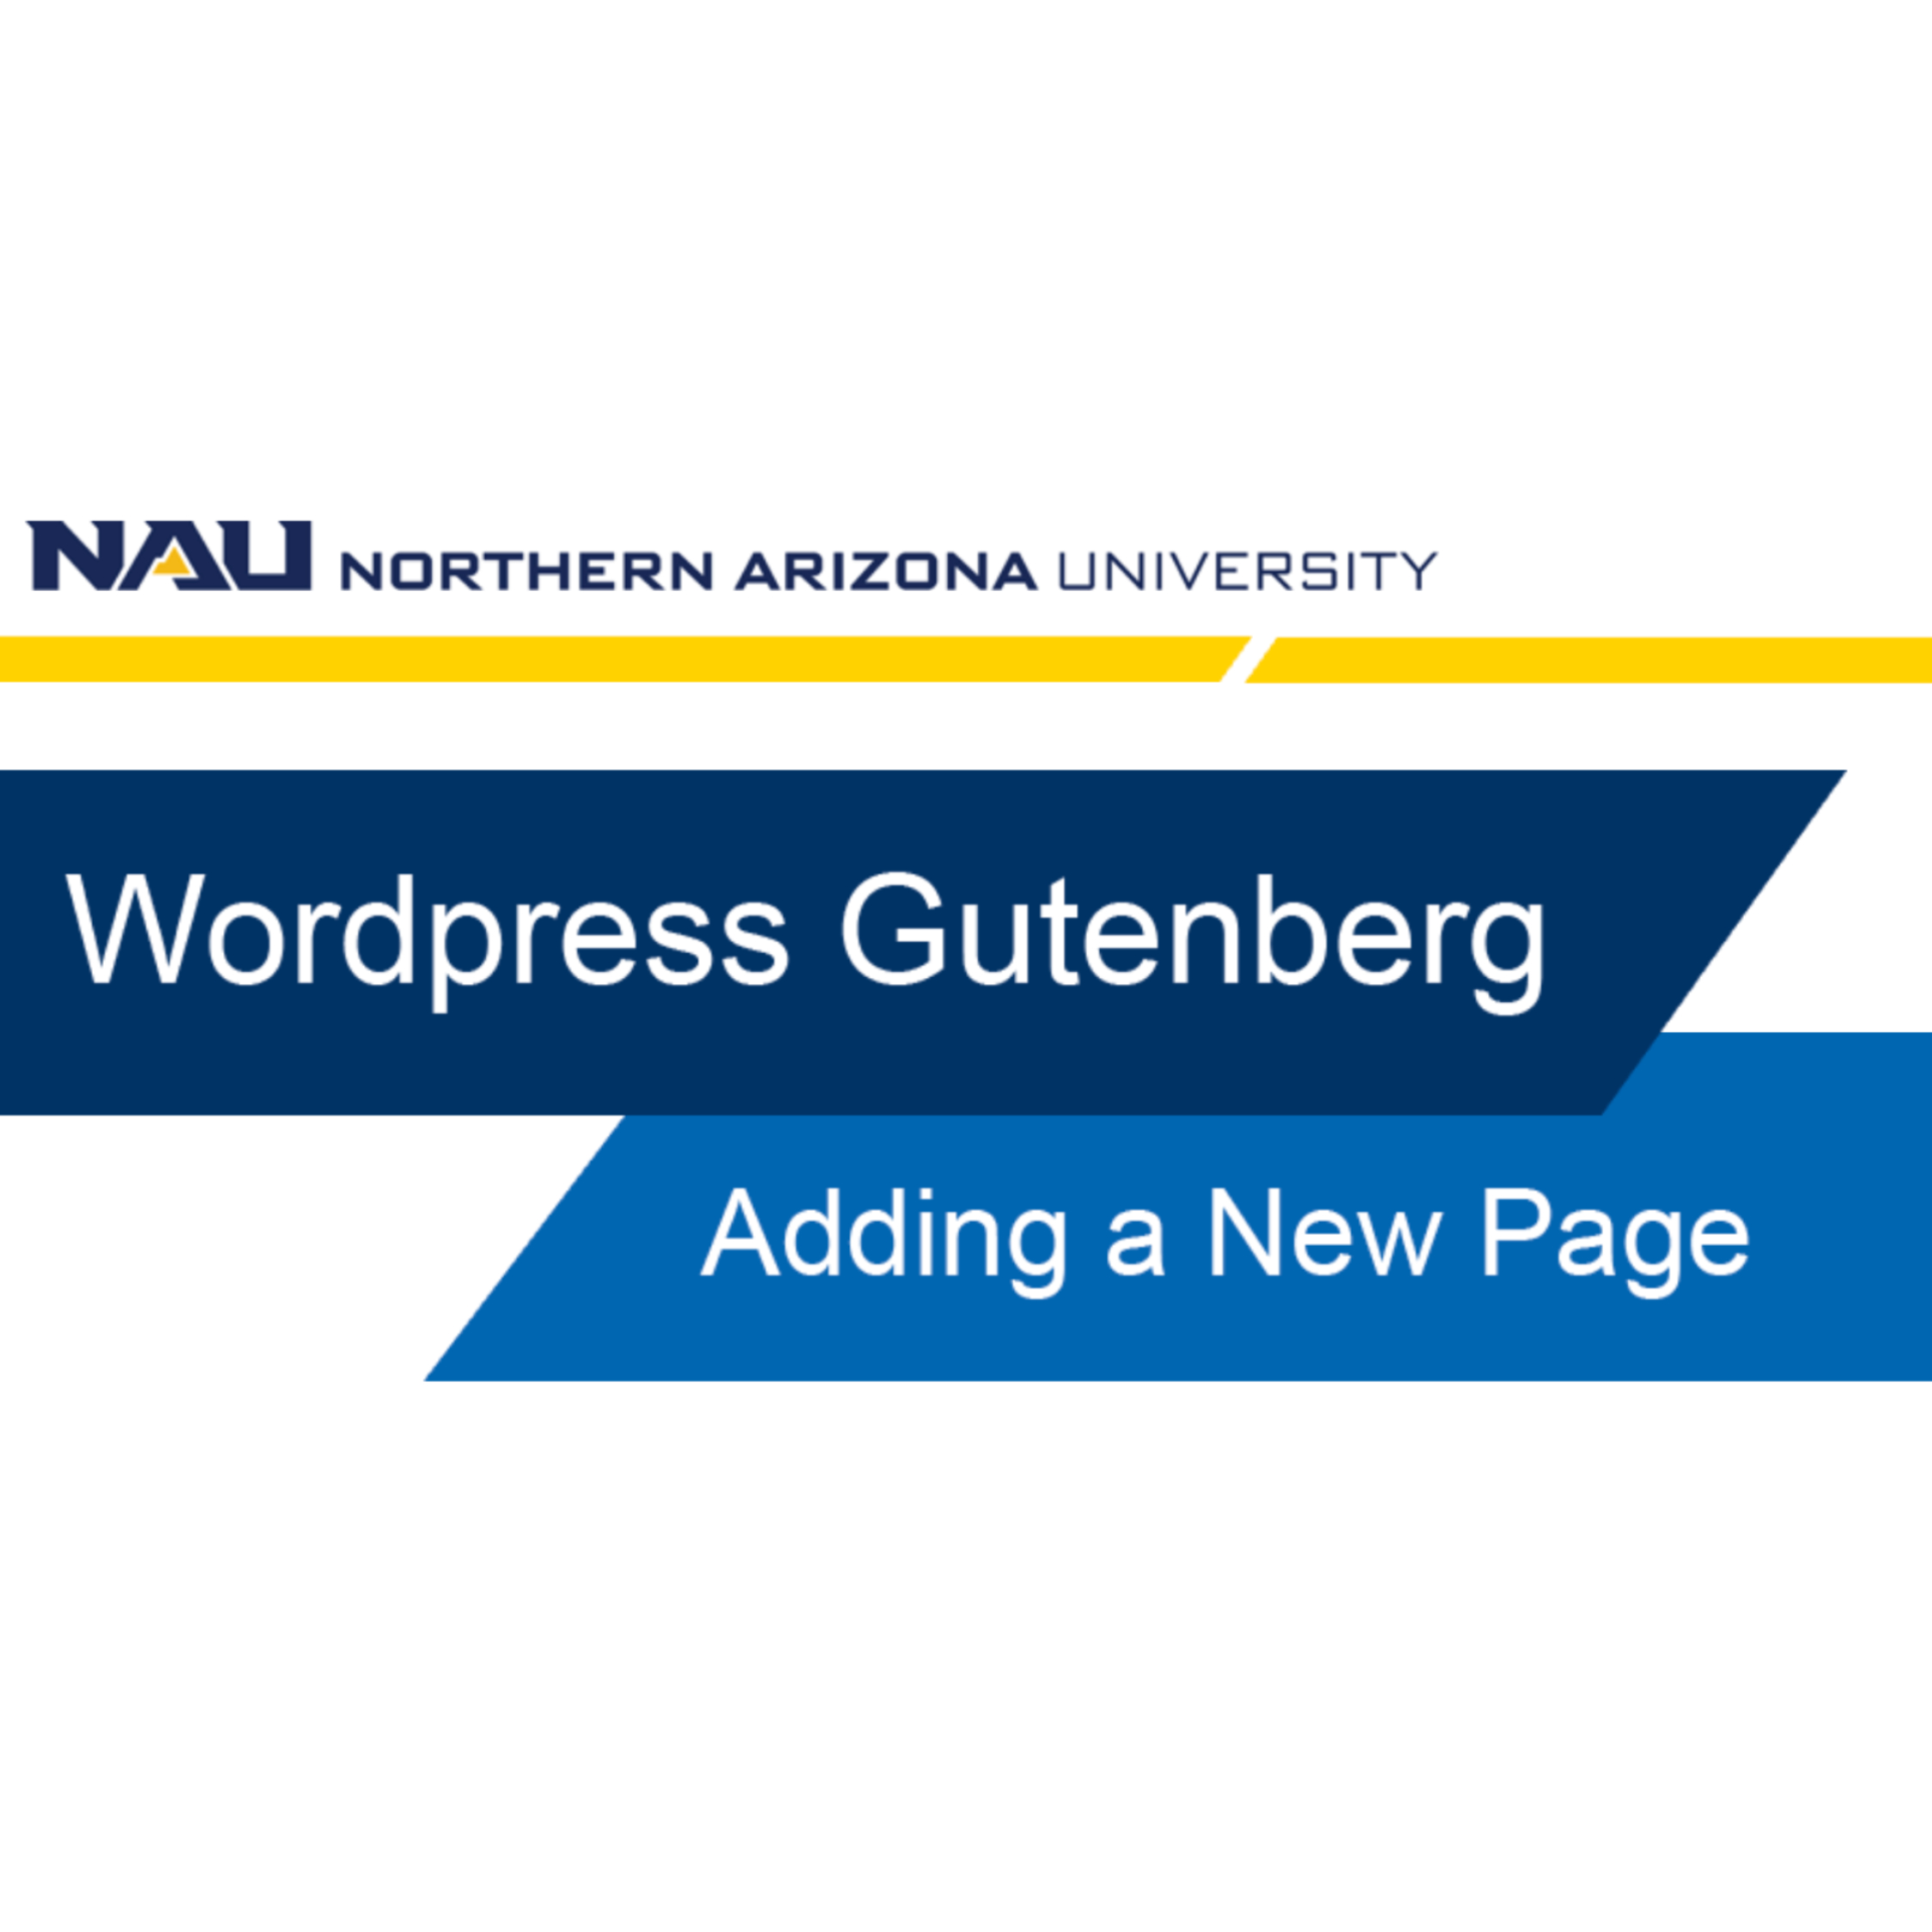 Thumbnail image of the Northern Arizona University WordPress Gutenberg tutorial start page, titled 'Adding a New Page'.